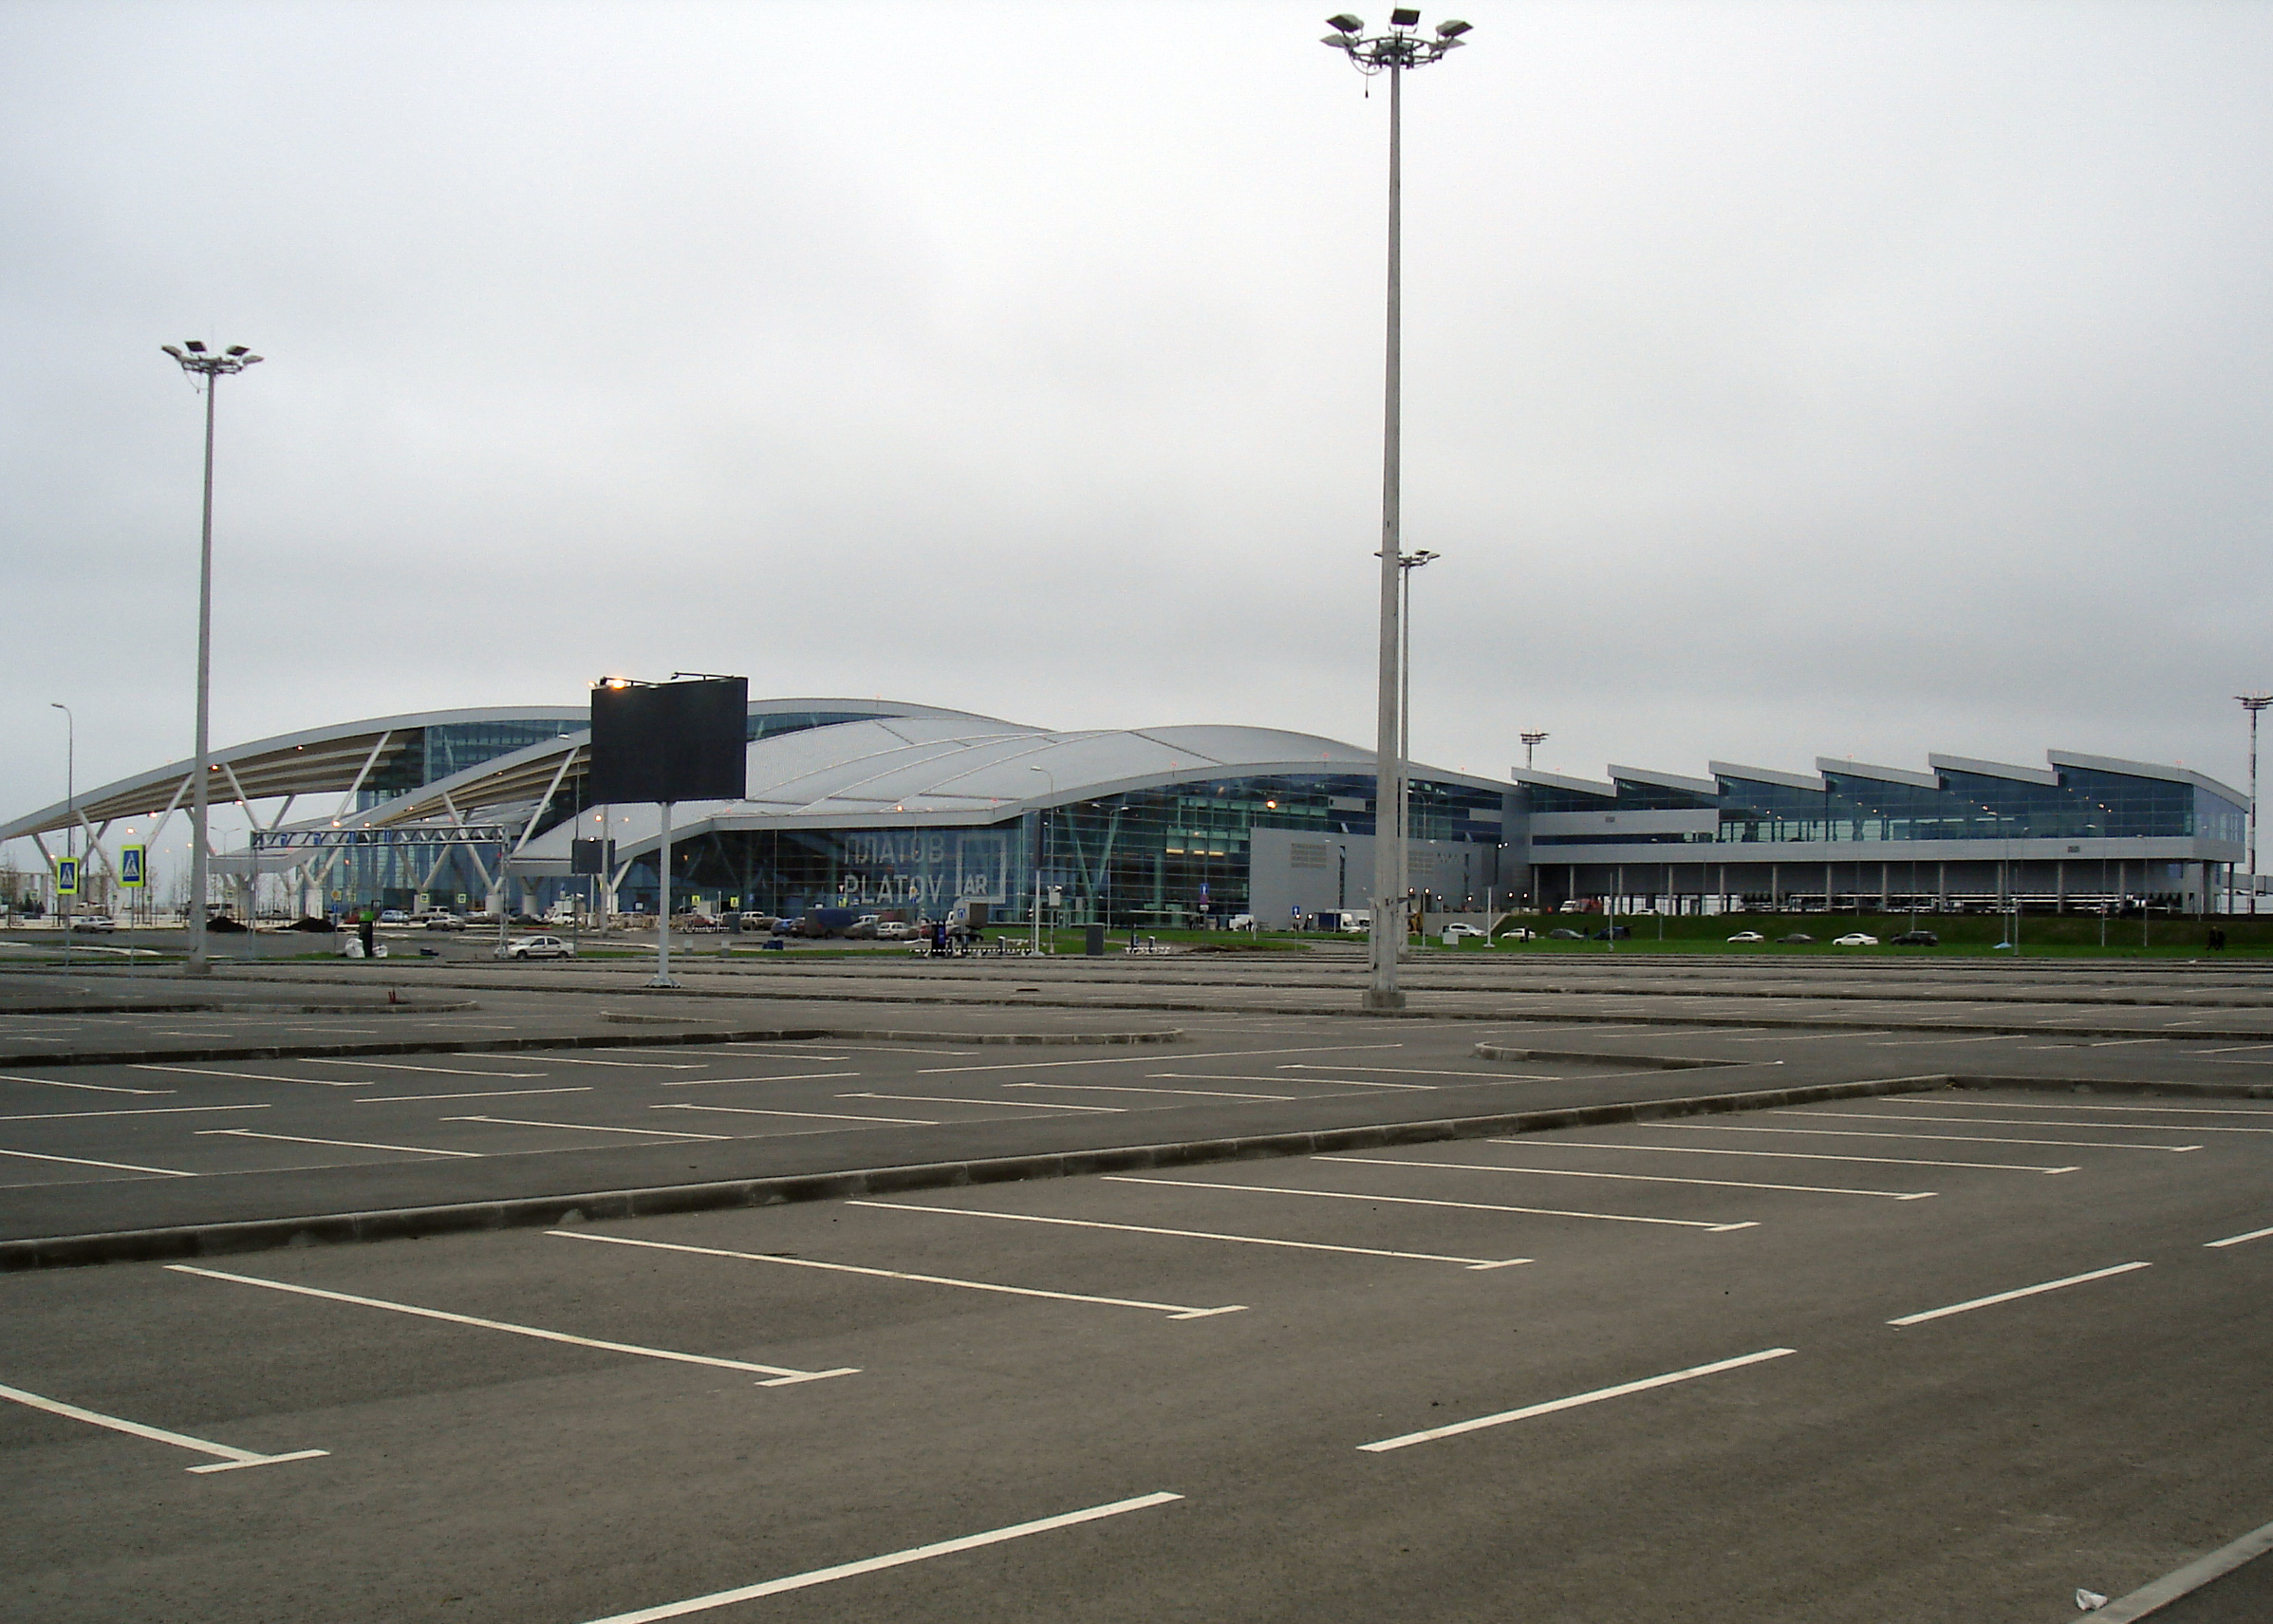 Platov Airport, Rostov-on-Don, Russia